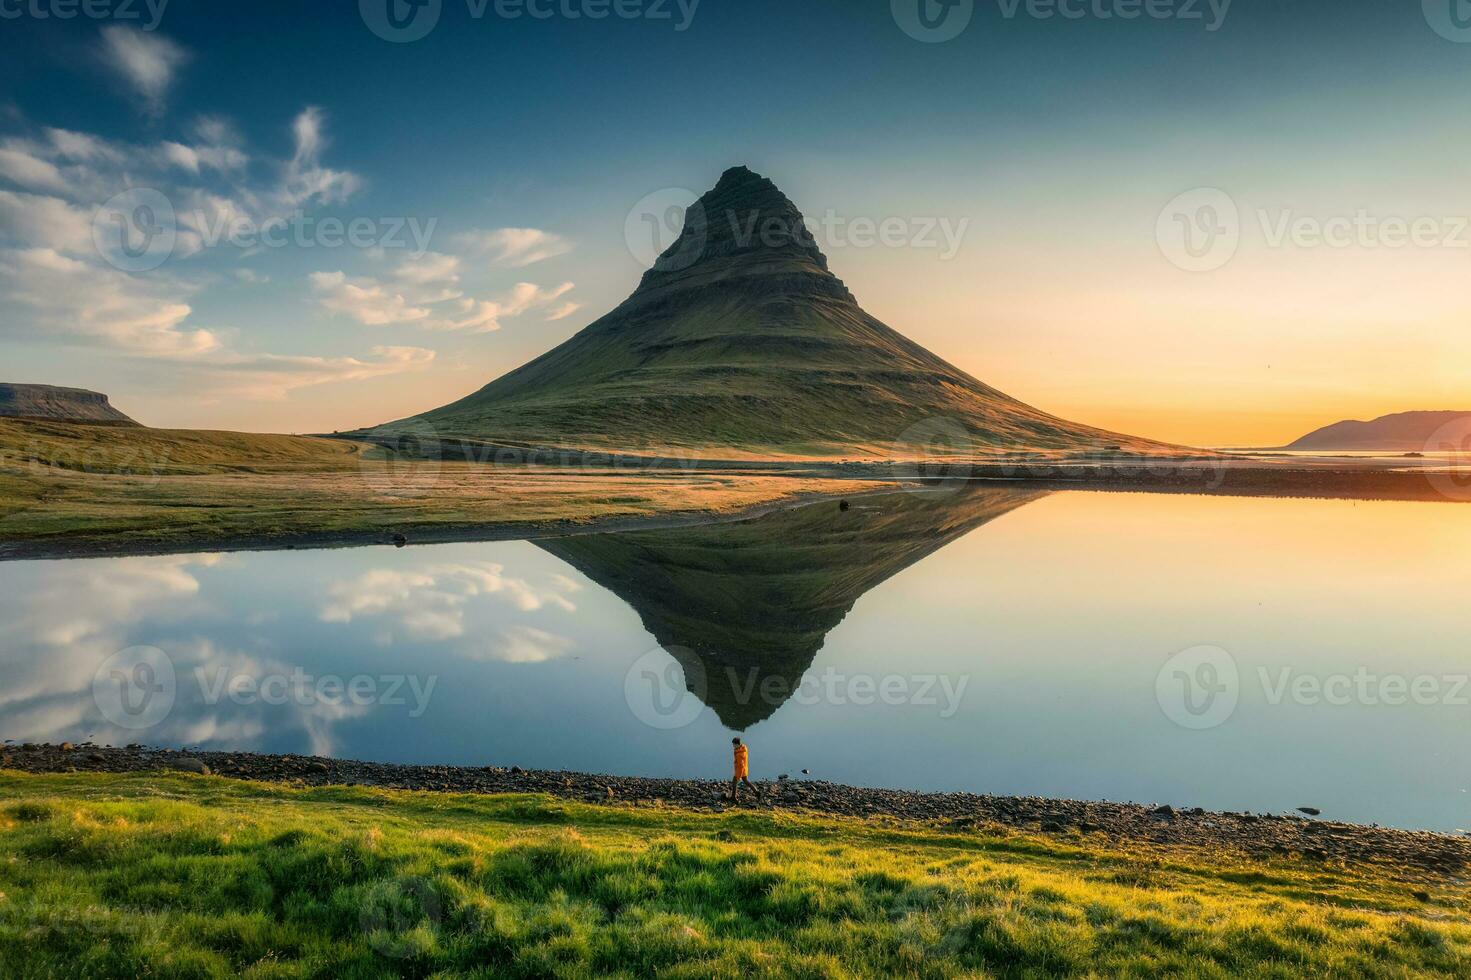 vulkanisk Kirkjufell berg med sjö reflexion och resande man stående under soluppgång på island foto